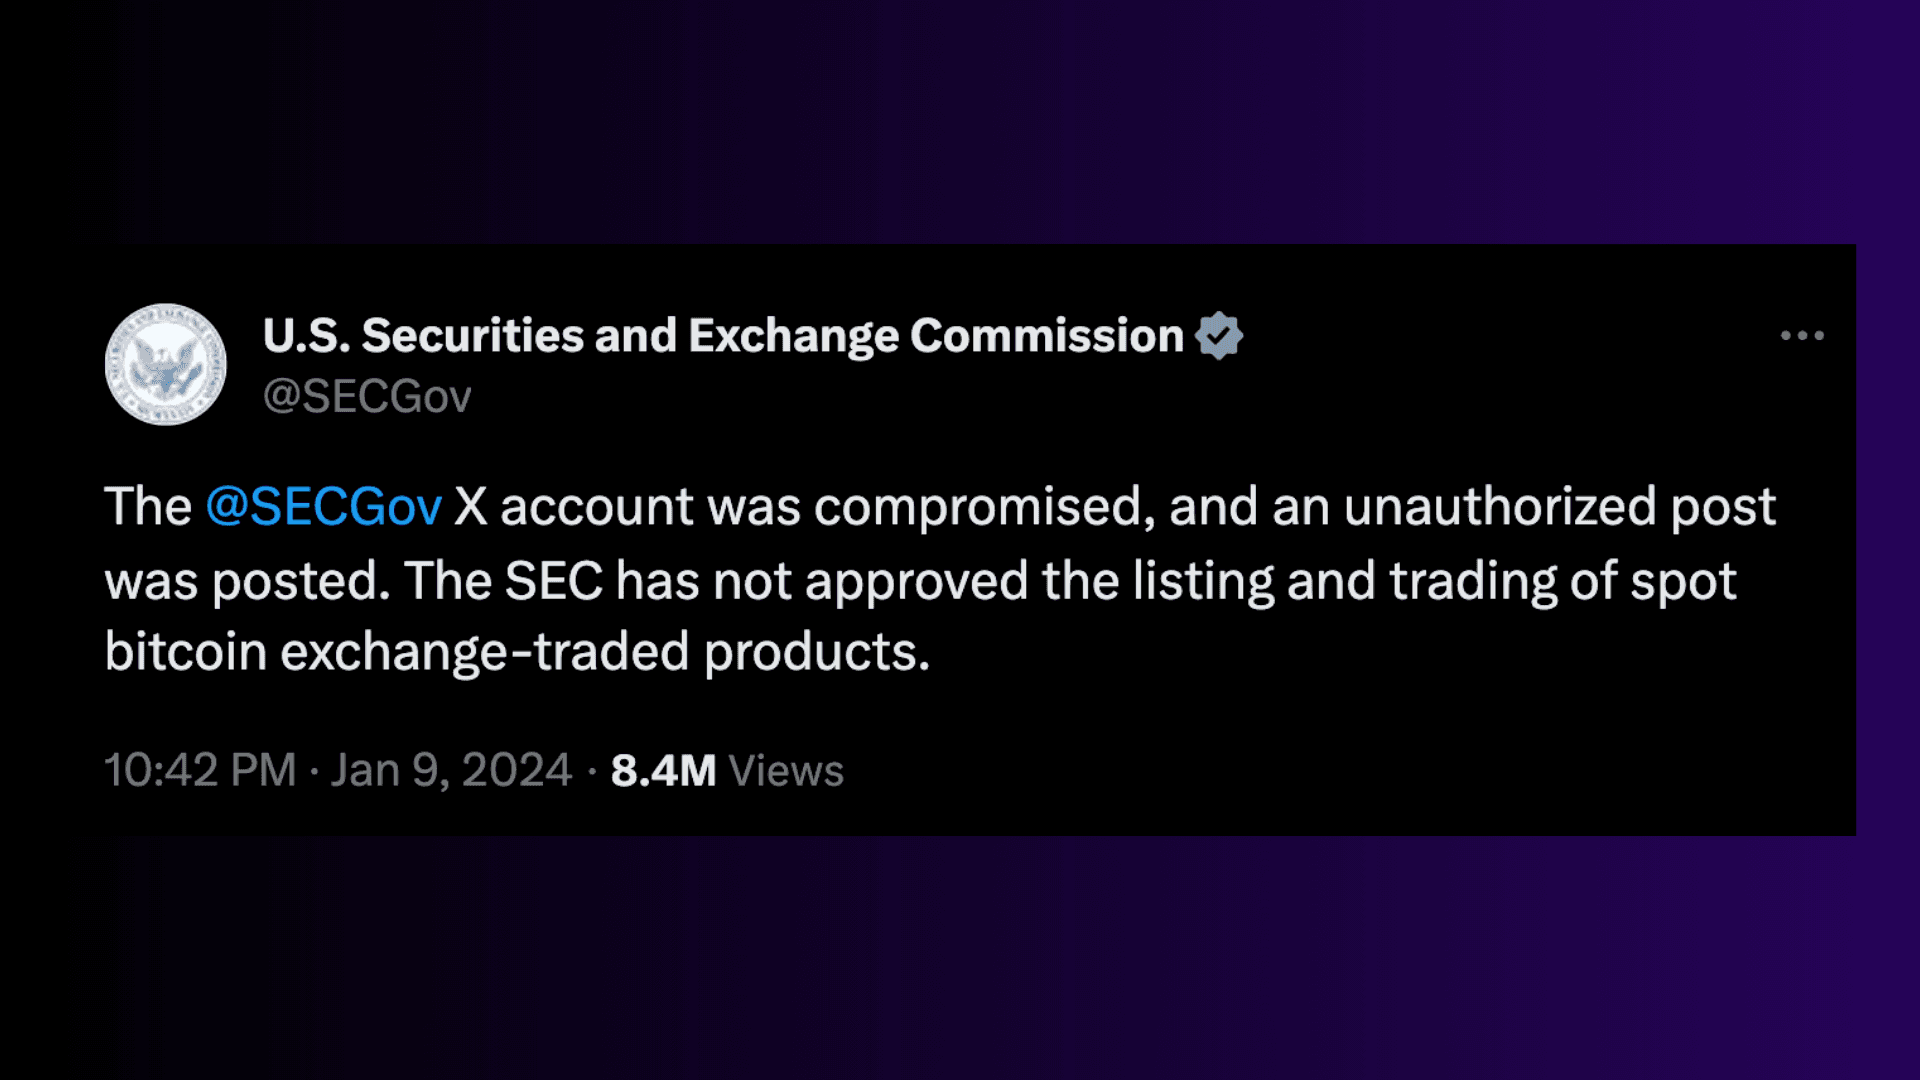 SEC X account compromised